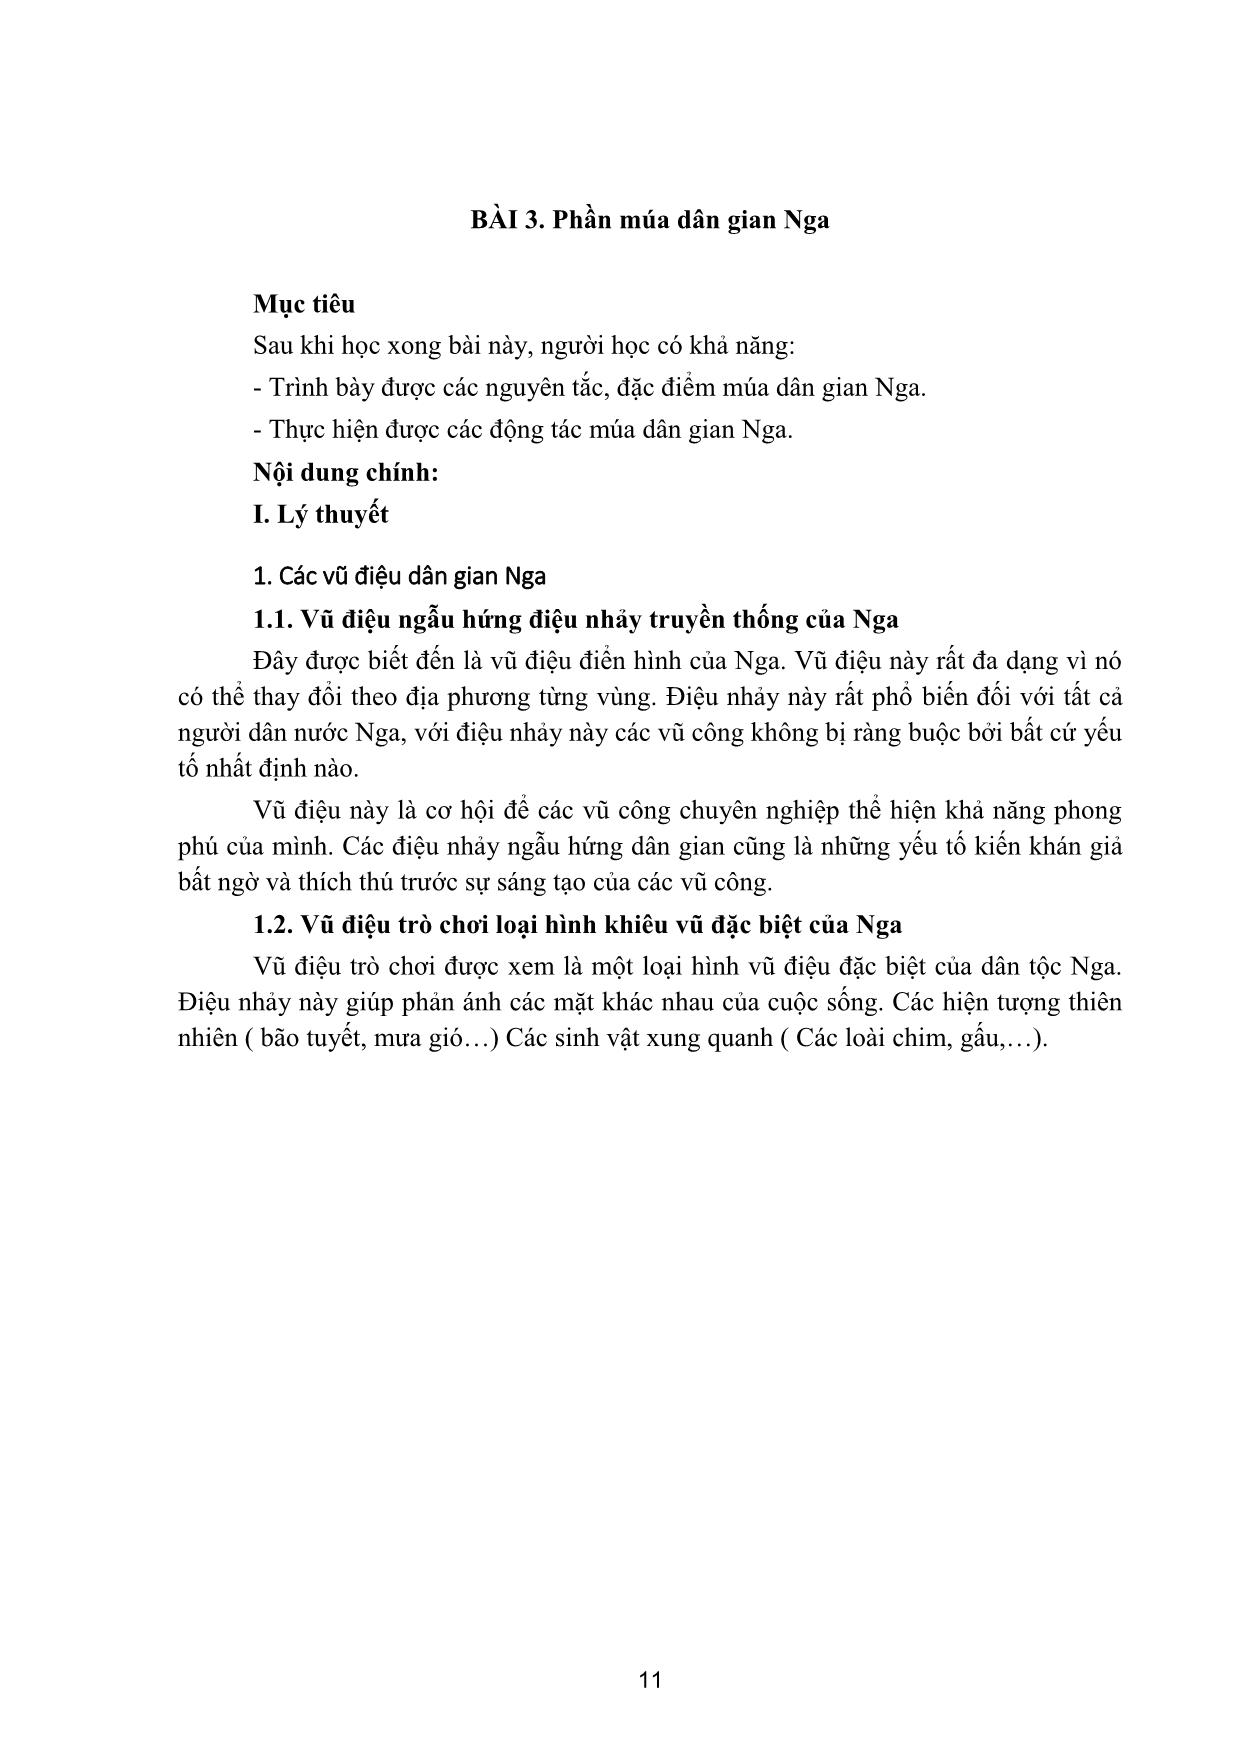 Giáo trình Múa tính cách trang 10